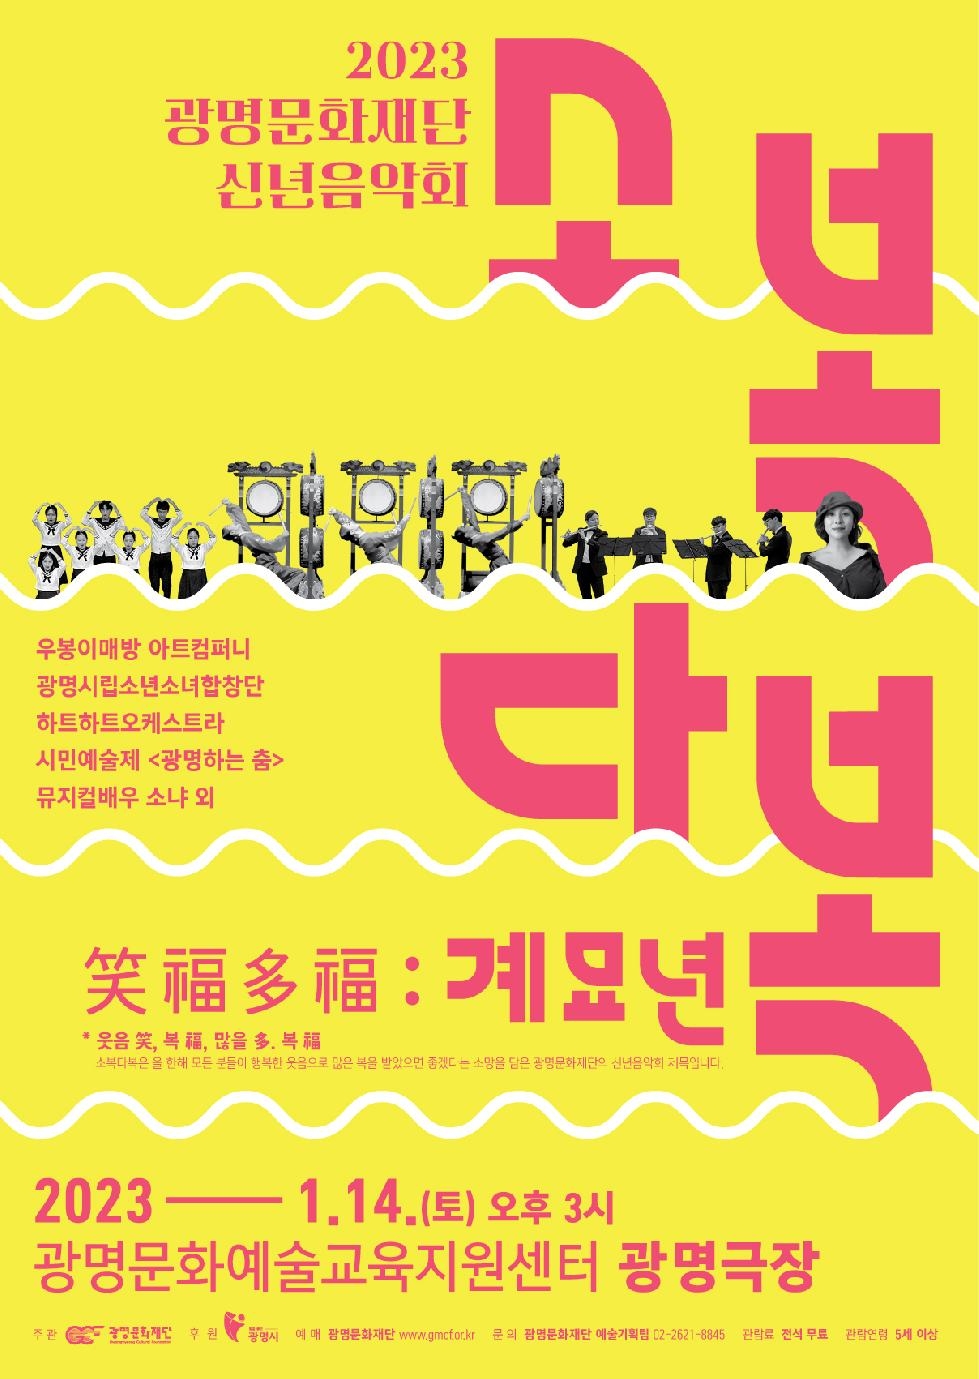 (재)광명문화재단, 2023년 신년음악회 [소복다복(笑福多福) : 계묘년